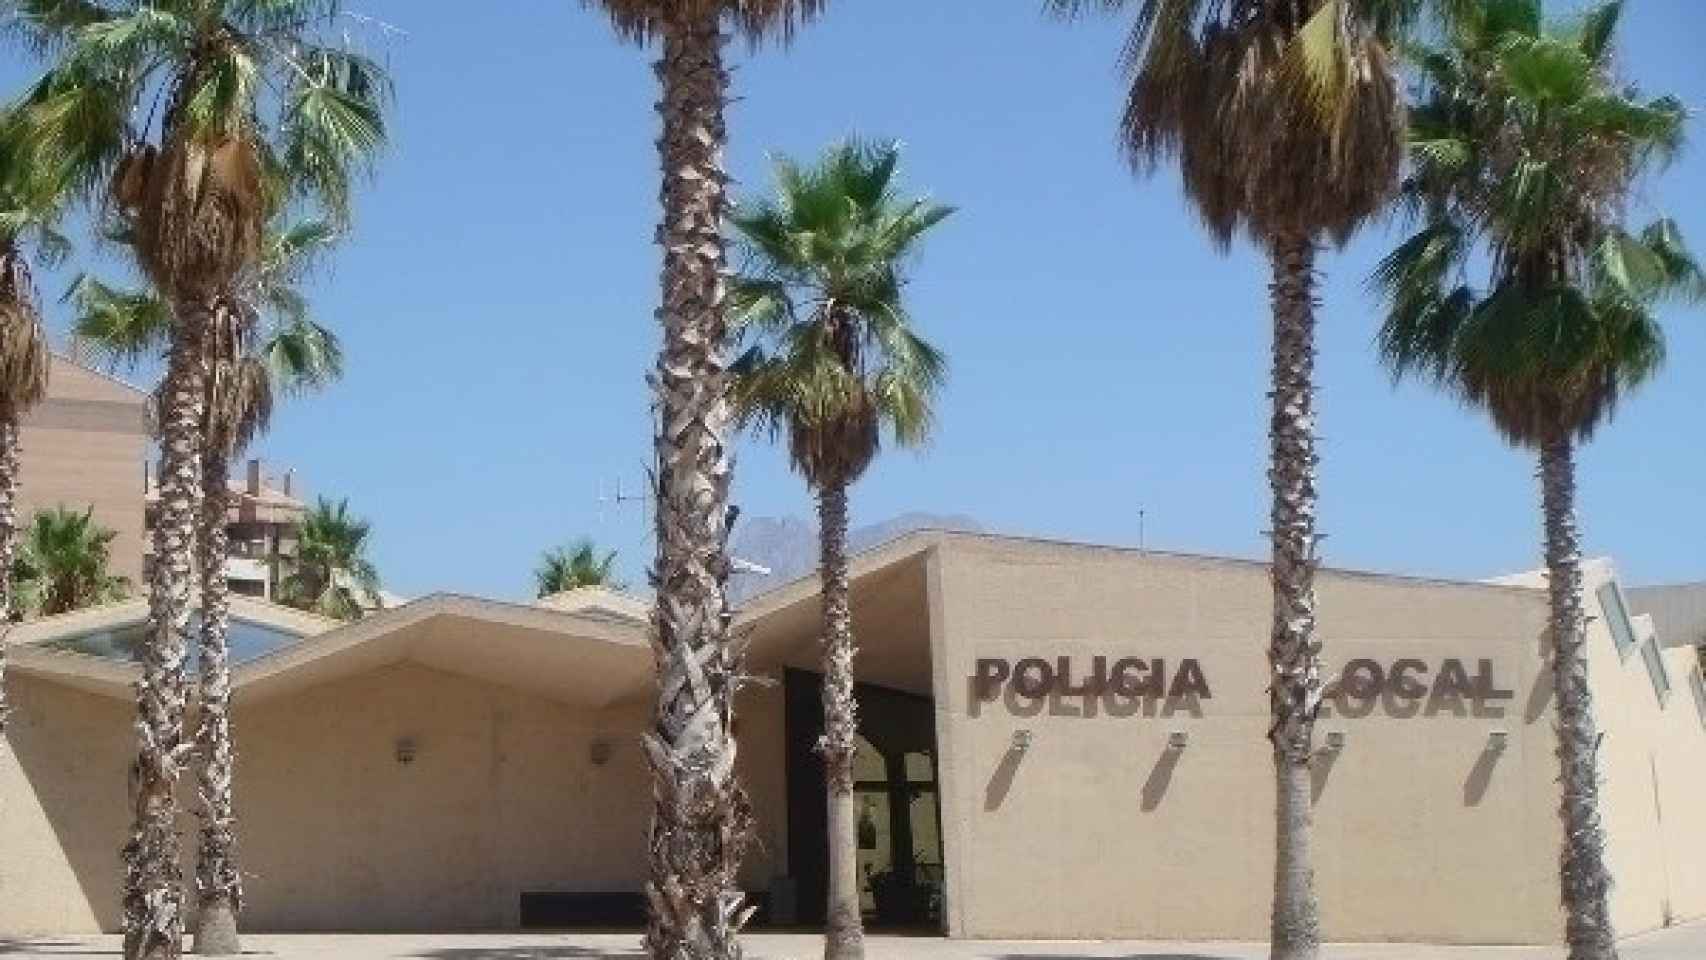 La comisaría de la Policia Local de Villajoyosa, de Alejandro Zaera-Polo.